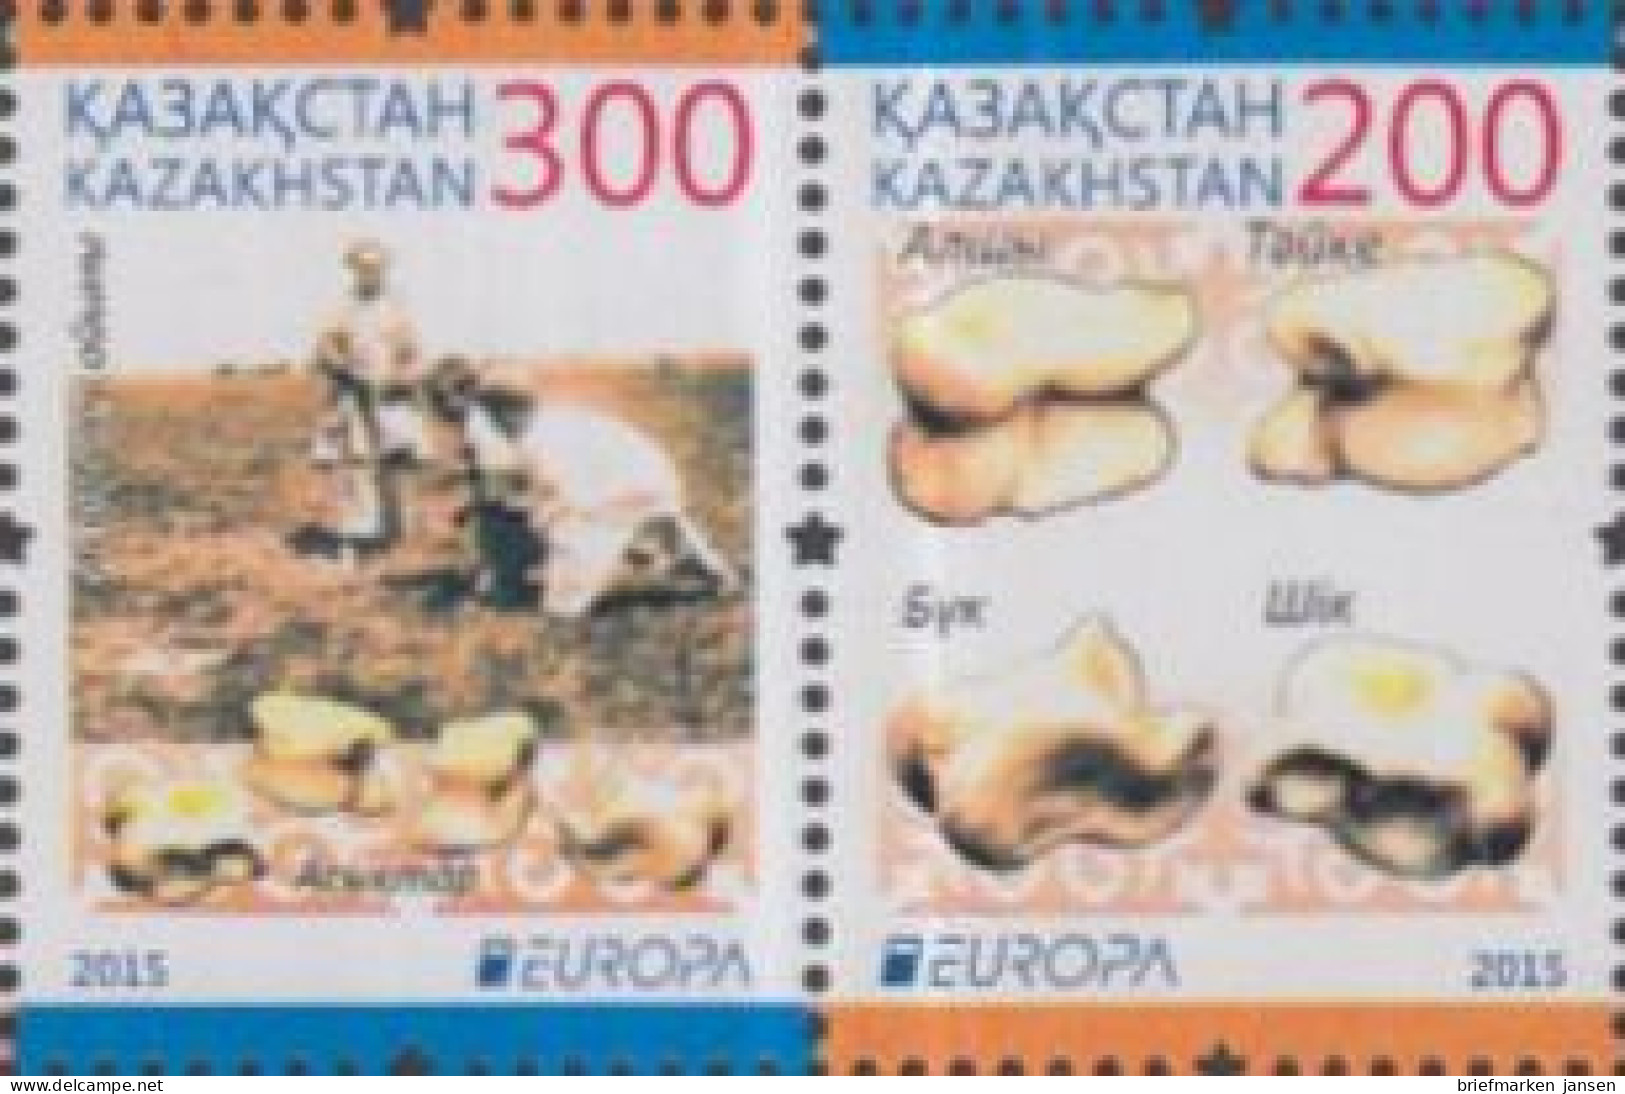 Kasachstan MiNr. Zdr.906+905 Europa 15, Hist.Spielzeug, Schagai-Spiel - Kazakhstan